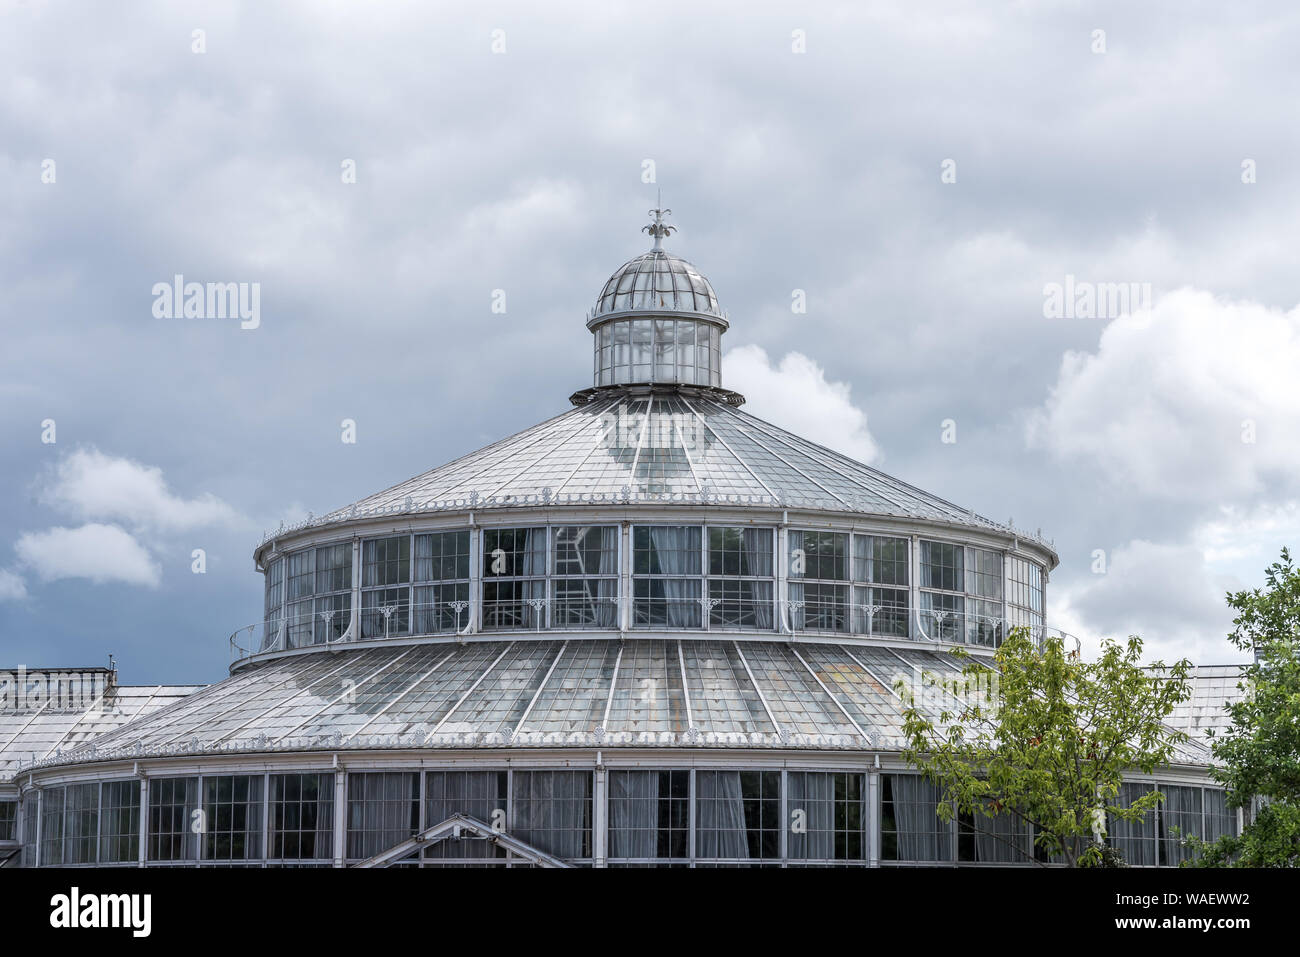 The greenhouse in the Botanic garden, glass against the blue sky in Copenhagen, Denmark, August 16, 2019 Stock Photo